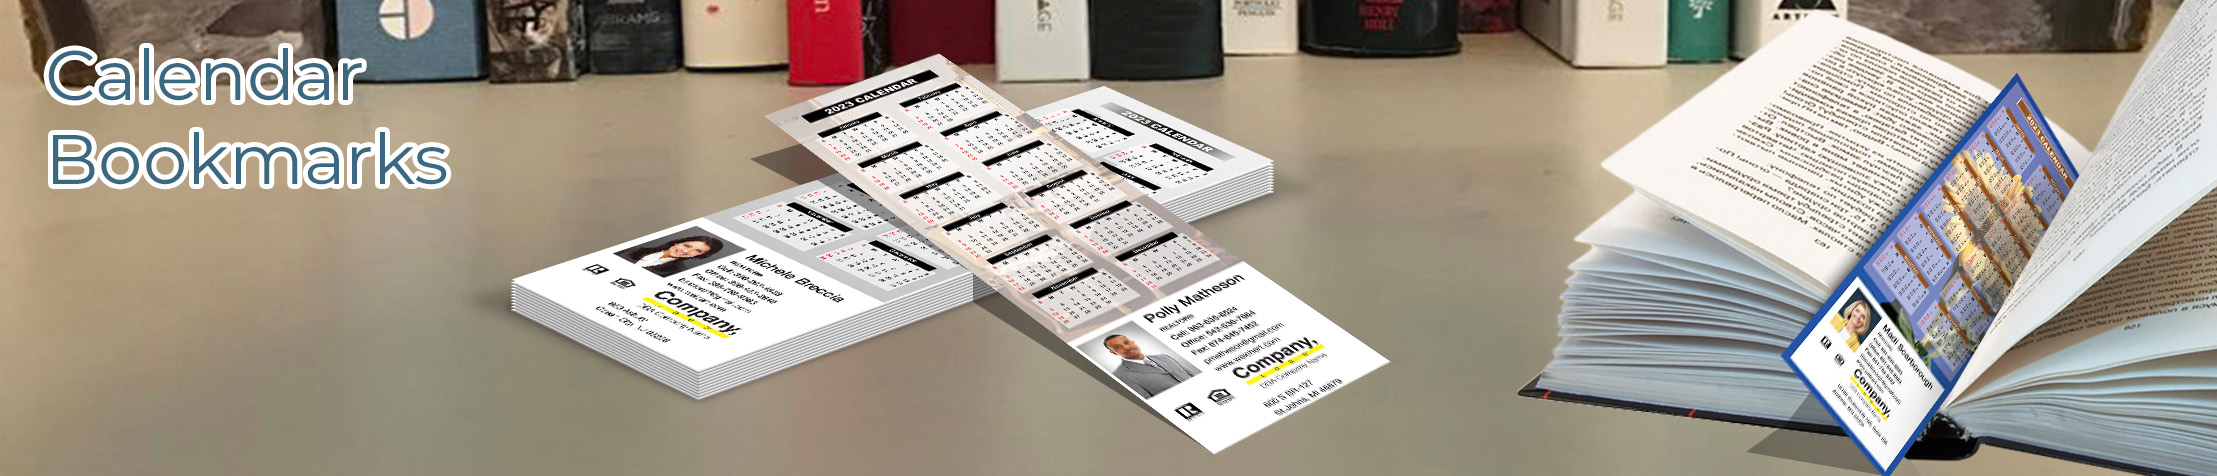 Weichert Real Estate Calendar Bookmarks - Weichert  2019 calendars printed on book markers | BestPrintBuy.com